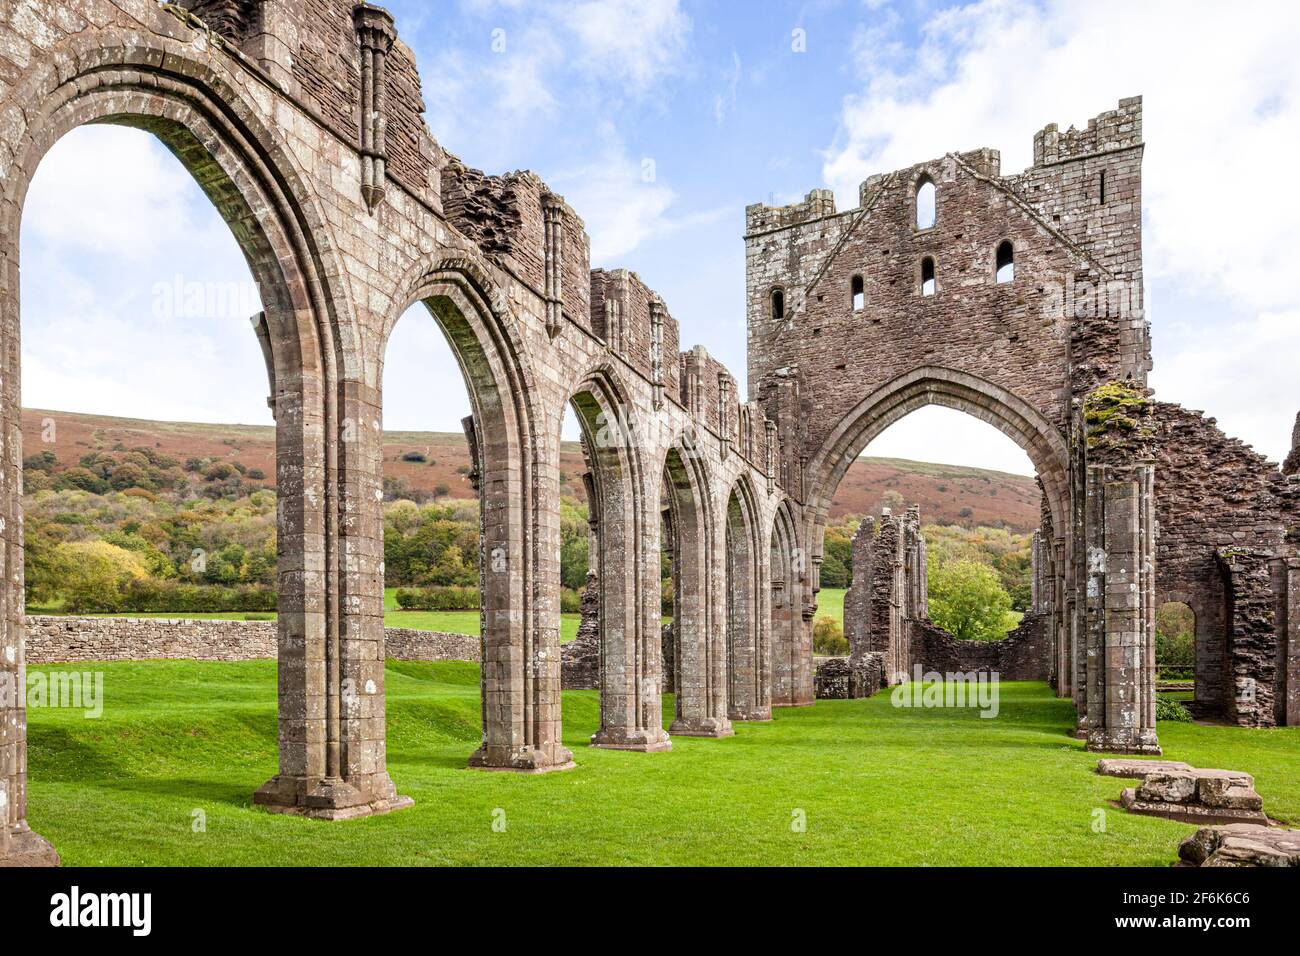 Die Ruinen von Llanthony Abbey, einem ehemaligen Augustiner-Priorat im Vale of Ewyas in den Brecon Beacons, Powys, Wales, Großbritannien Stockfoto